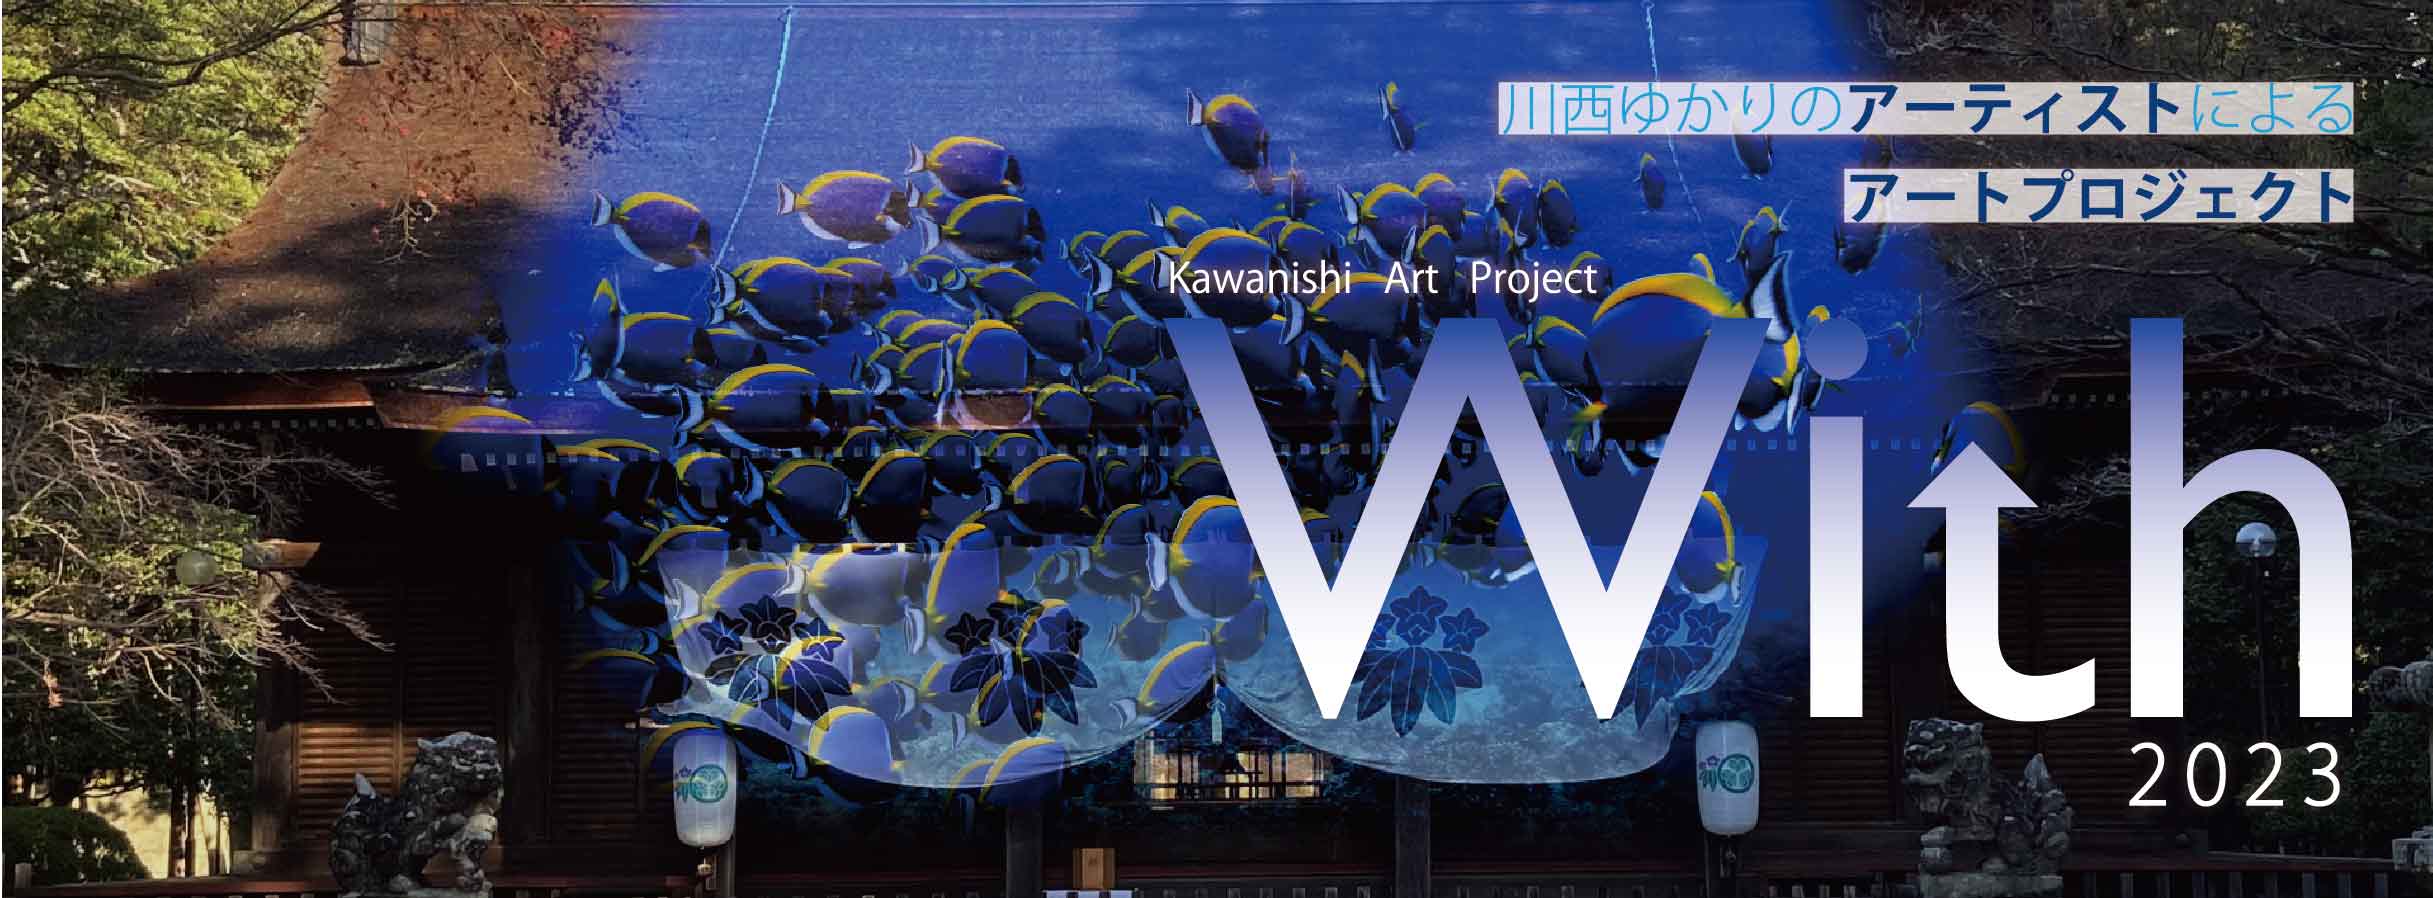 キセラ川西プラザ・多田神社「Kawanishi Art Project With 2023」川西市 [画像]